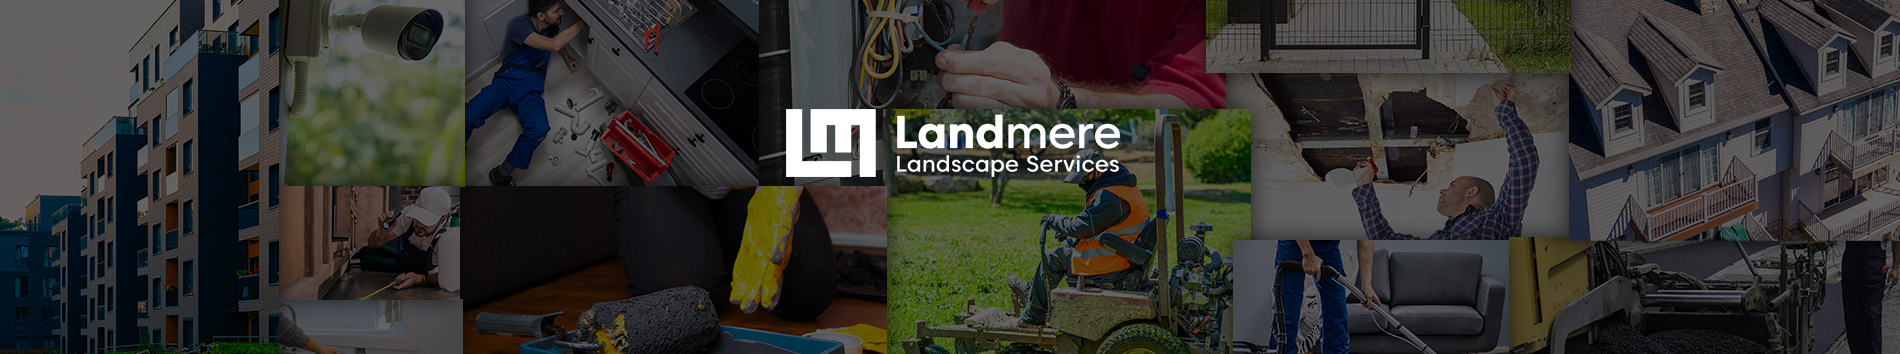 Landmere Landscape Services, Inc.